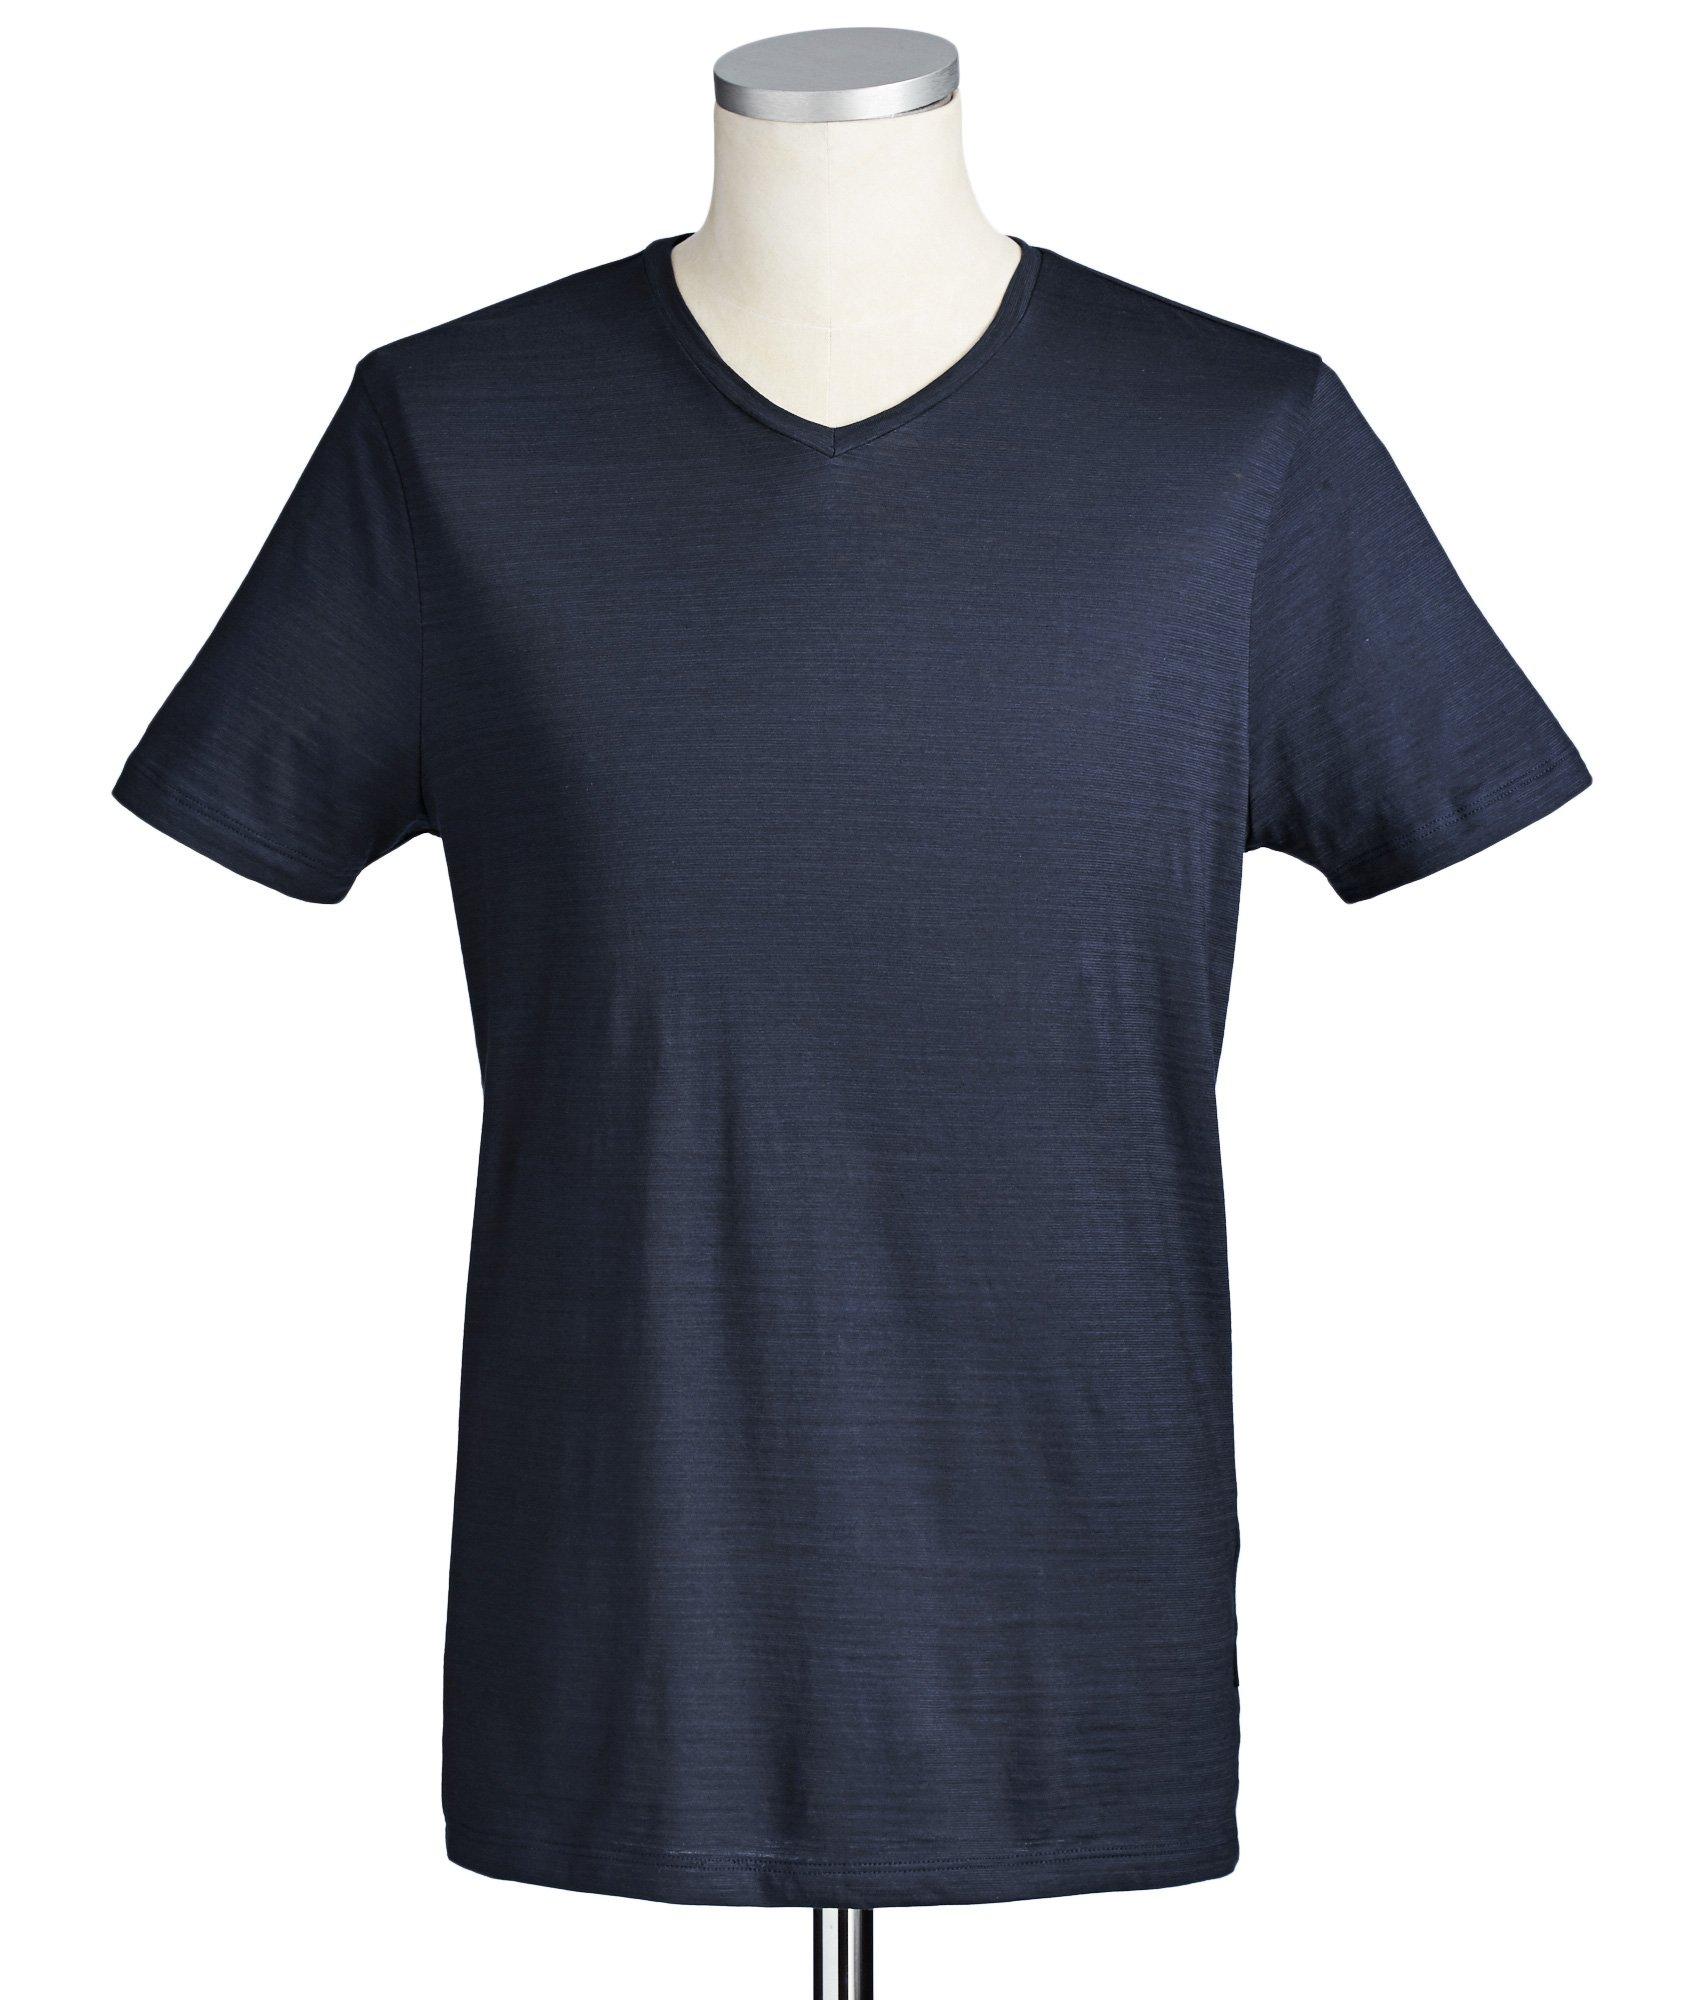 T-shirt en coton, modèle Tilson image 0